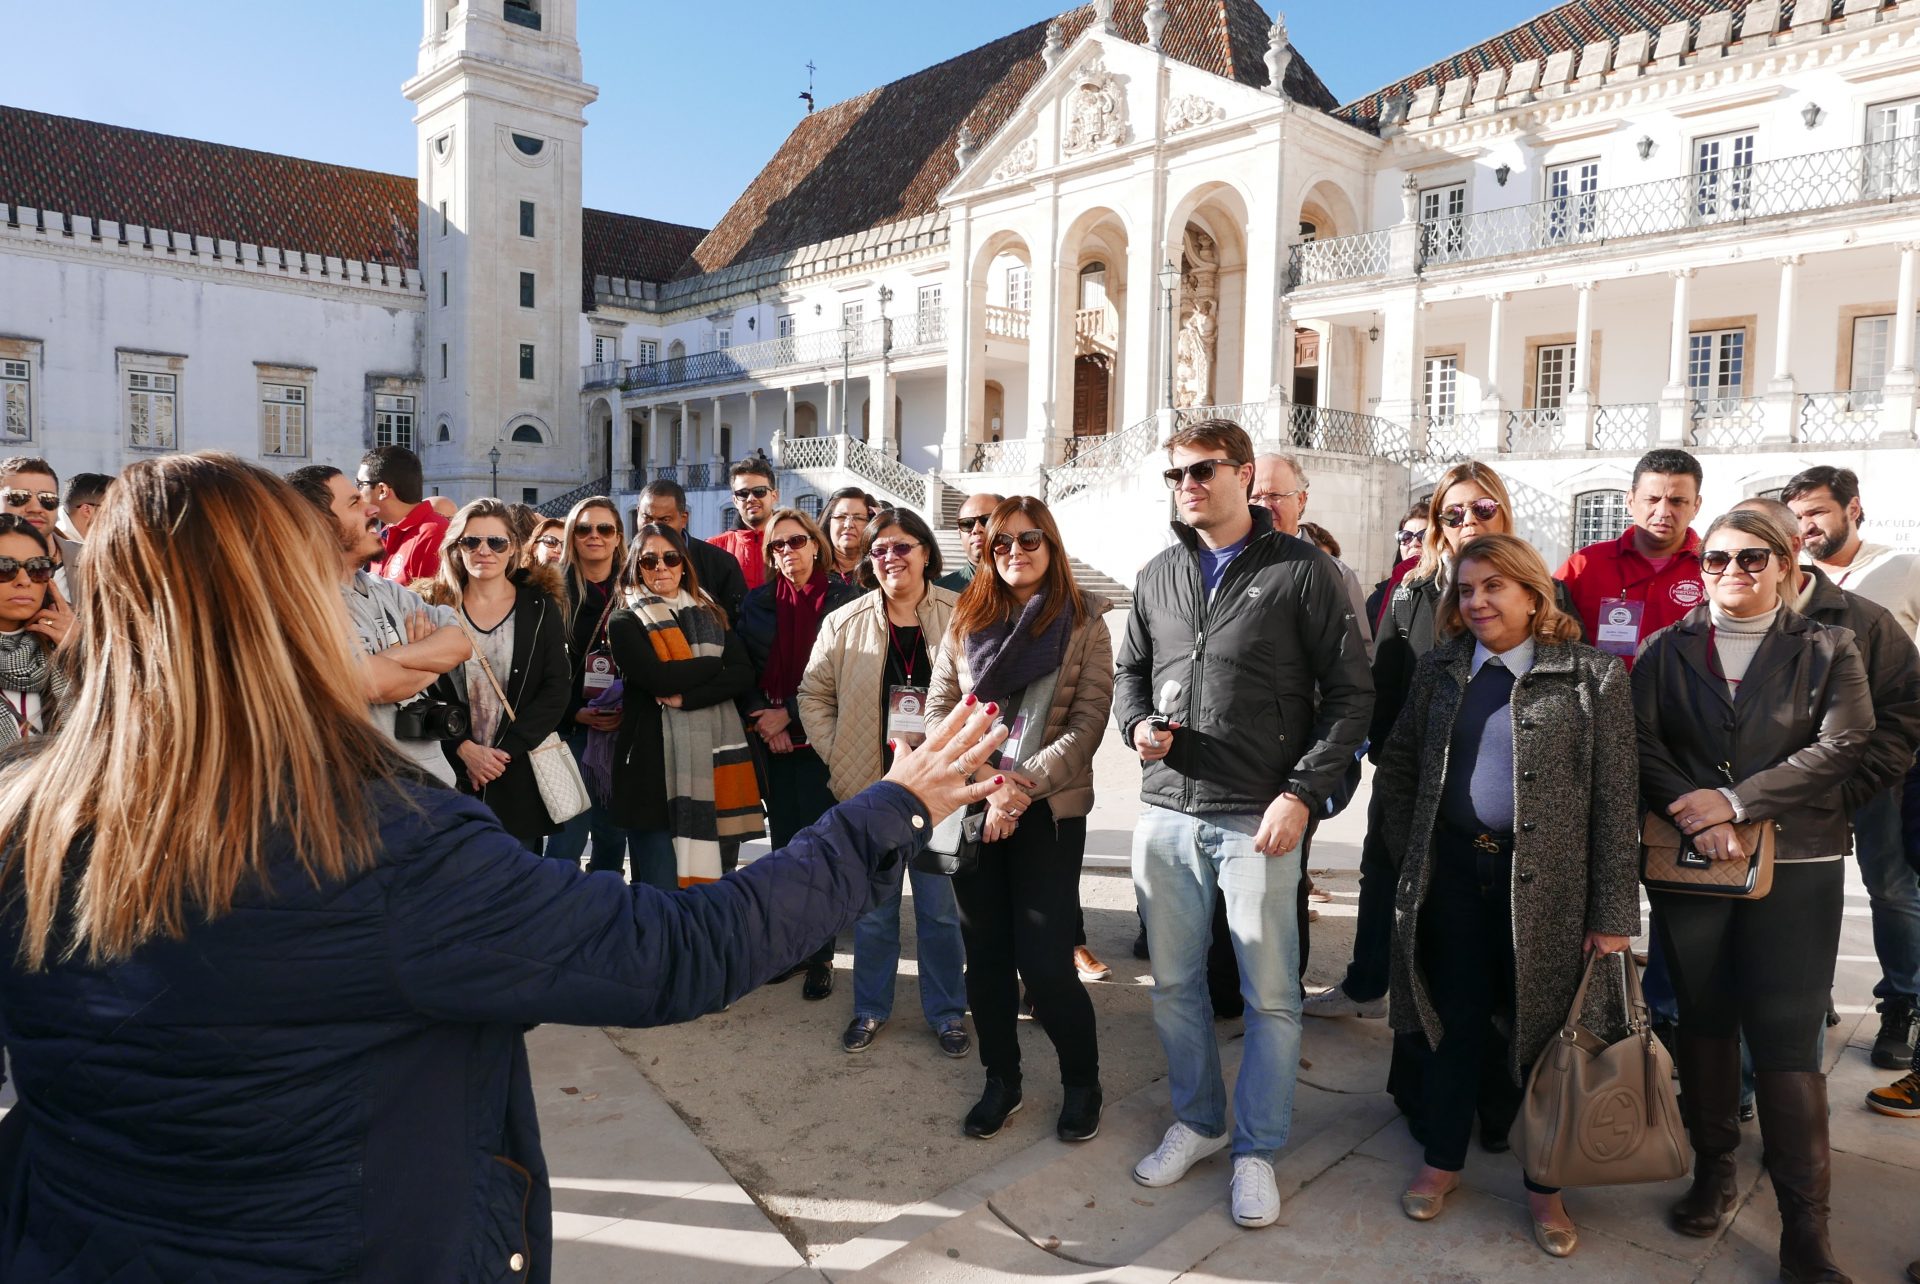 O ponto alto da estadia em Coimbra foi a visita à Universidade, uma das mais antigas da Europa